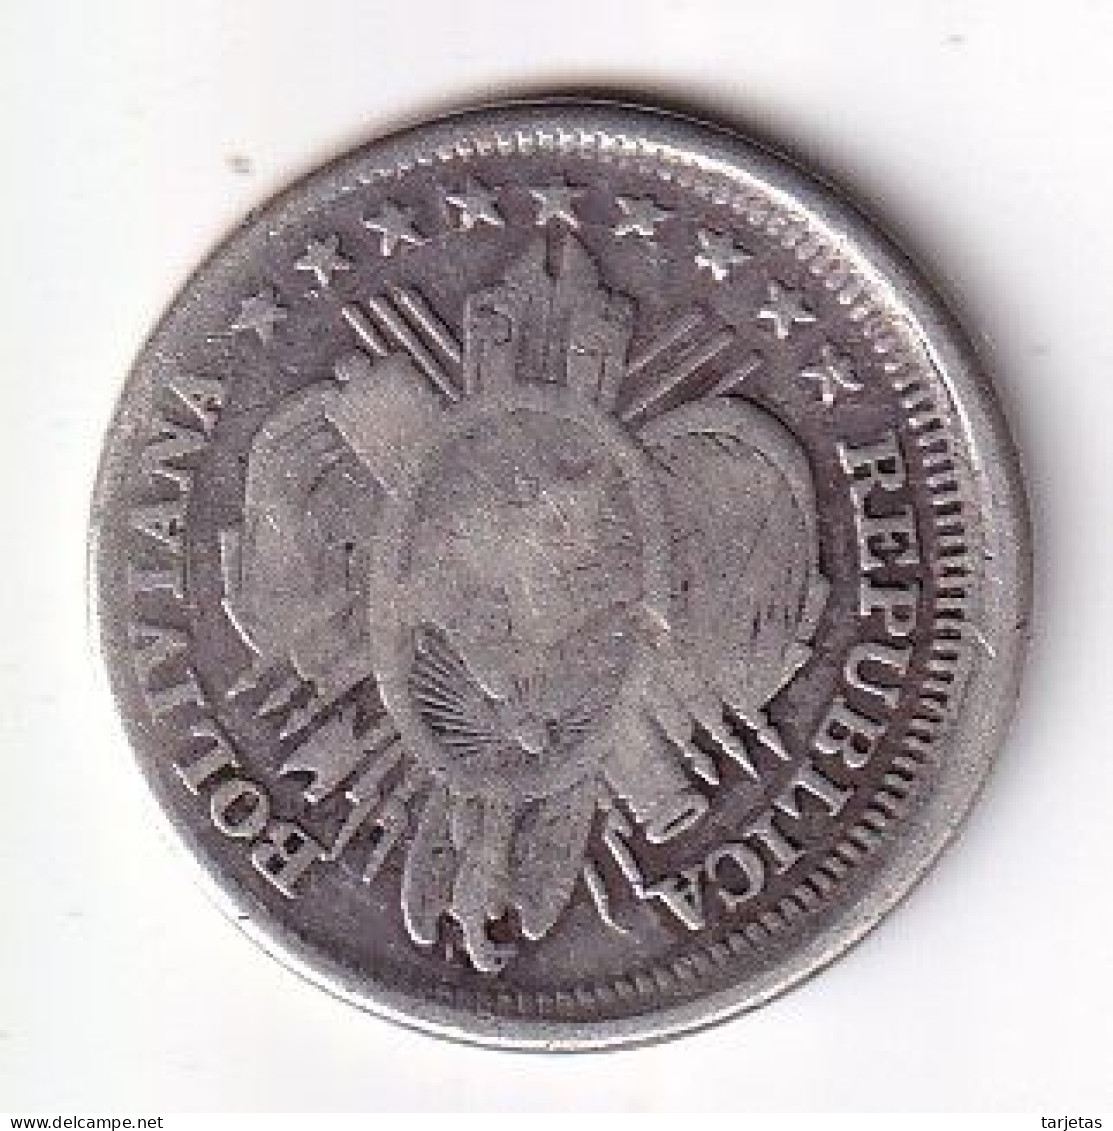 MONEDA DE PLATA DE BOLIVIA DE 20 CENTAVOS DEL AÑO 1890  (COIN) SILVER,ARGENT. - Bolivia